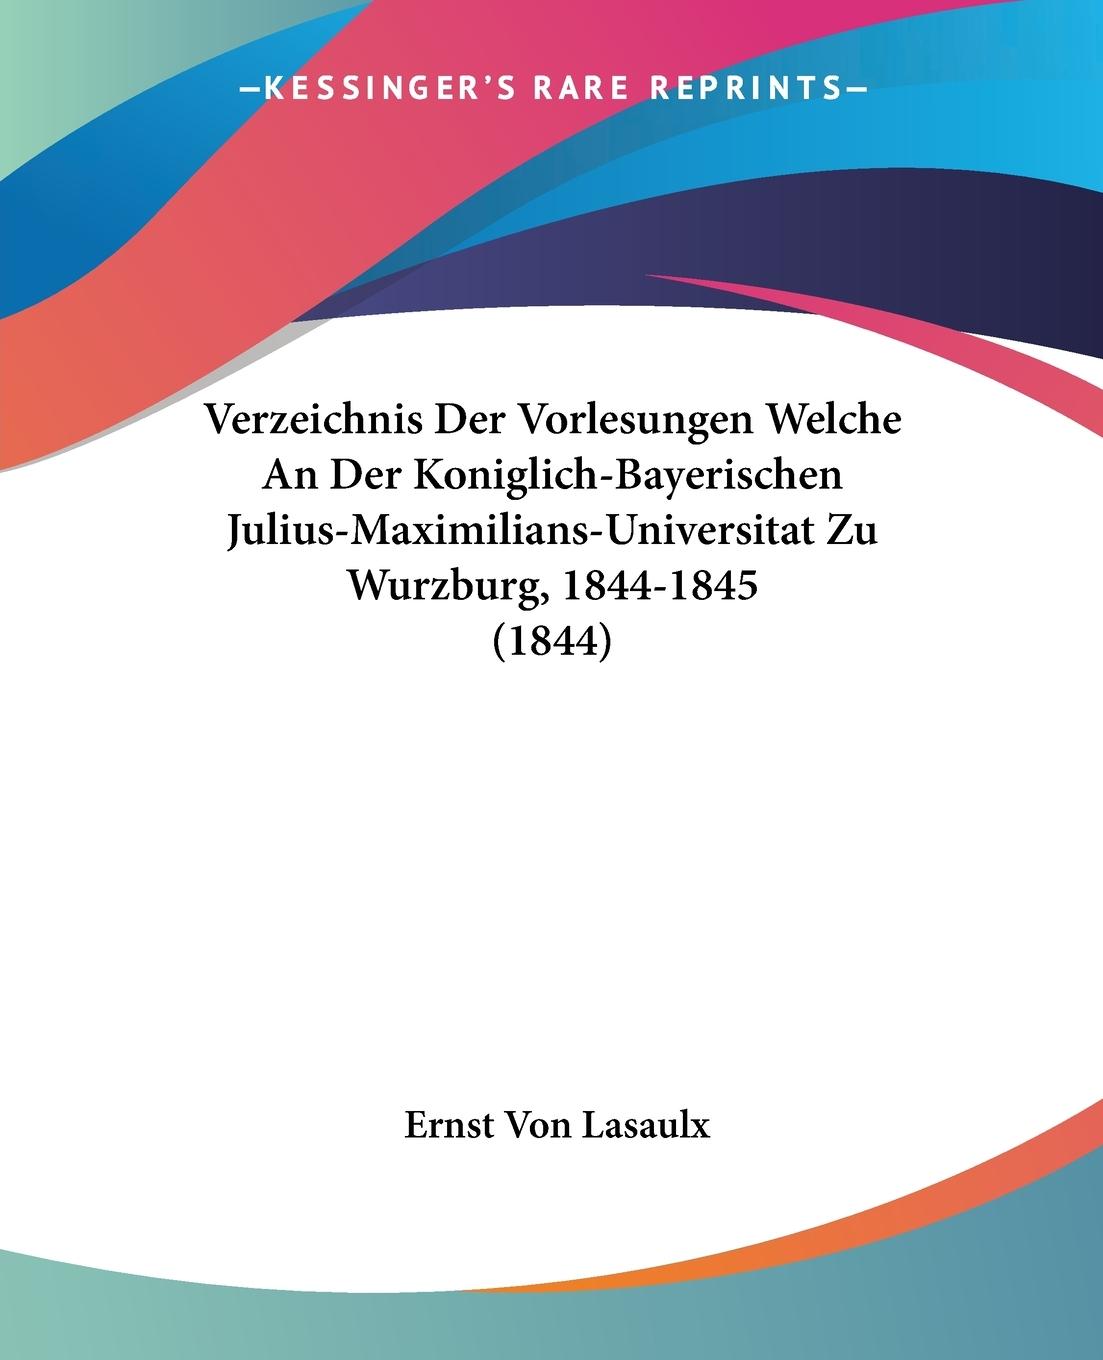 Verzeichnis Der Vorlesungen Welche An Der Koniglich-Bayerischen Julius-Maximilians-Universitat Zu Wurzburg, 1844-1845 (1844) - Lasaulx, Ernst Von